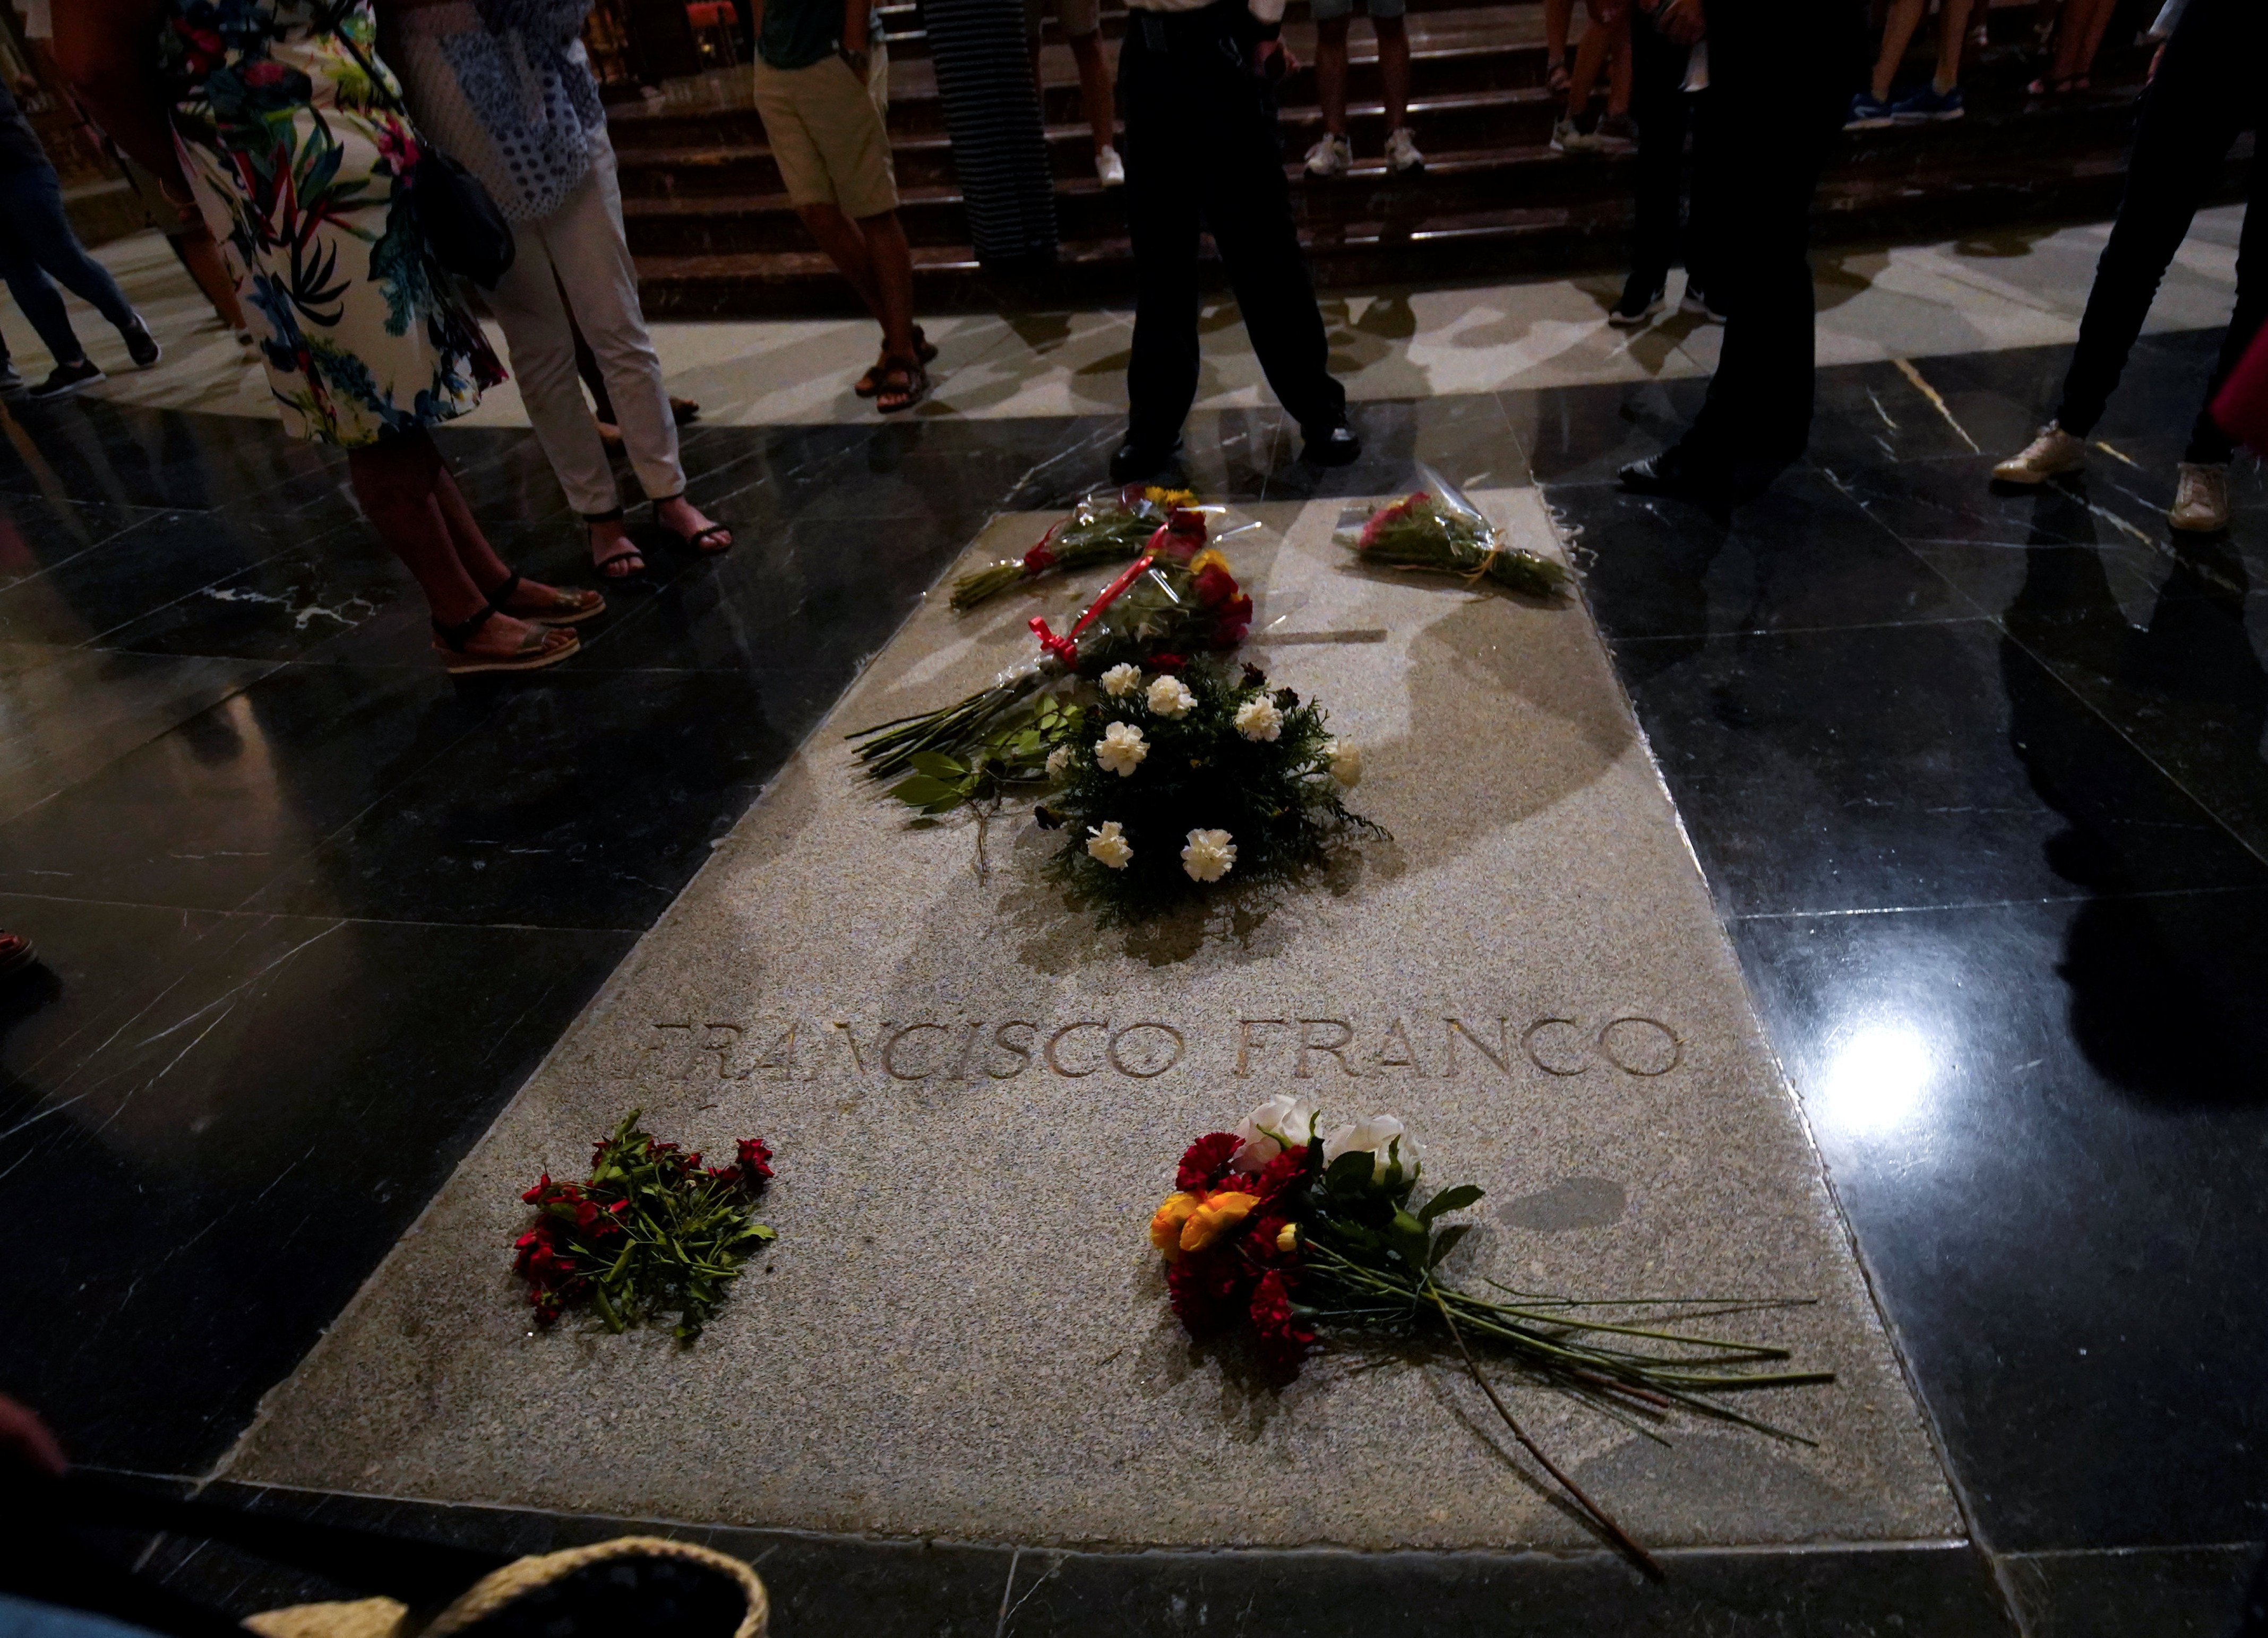 El juez que ha frenado la exhumación de Franco, contra la memoria histórica y el derecho a decidir